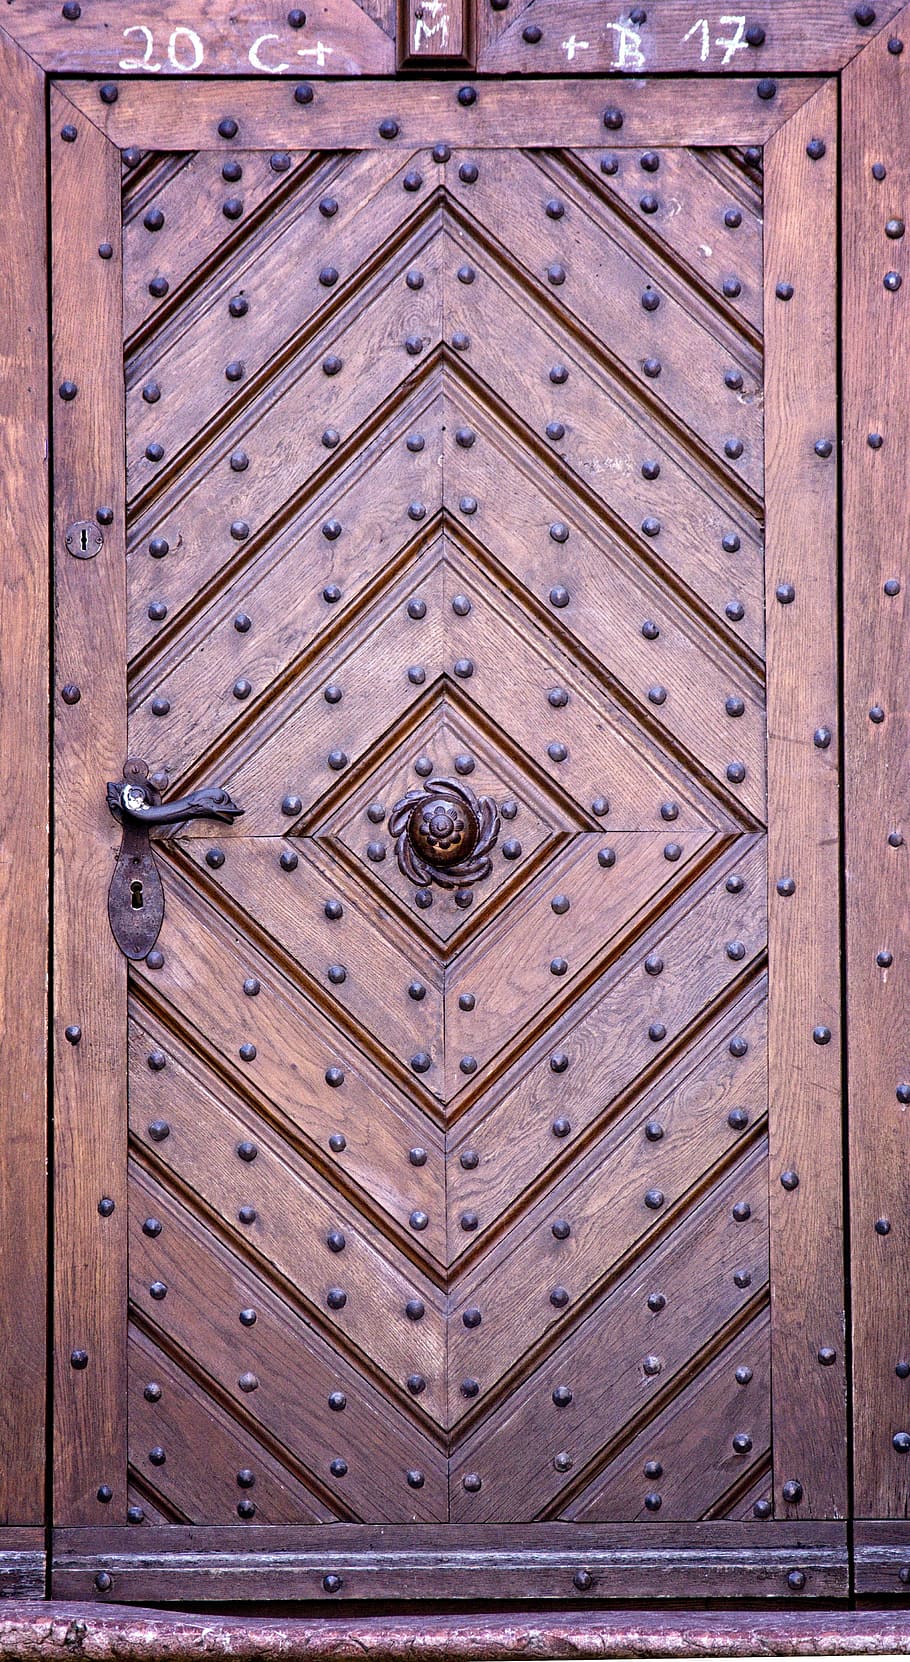 Entrada, Puerta, Antigua, puerta de entrada, puerta vieja, históricamente, montaje, puerta principal, madera, adorno